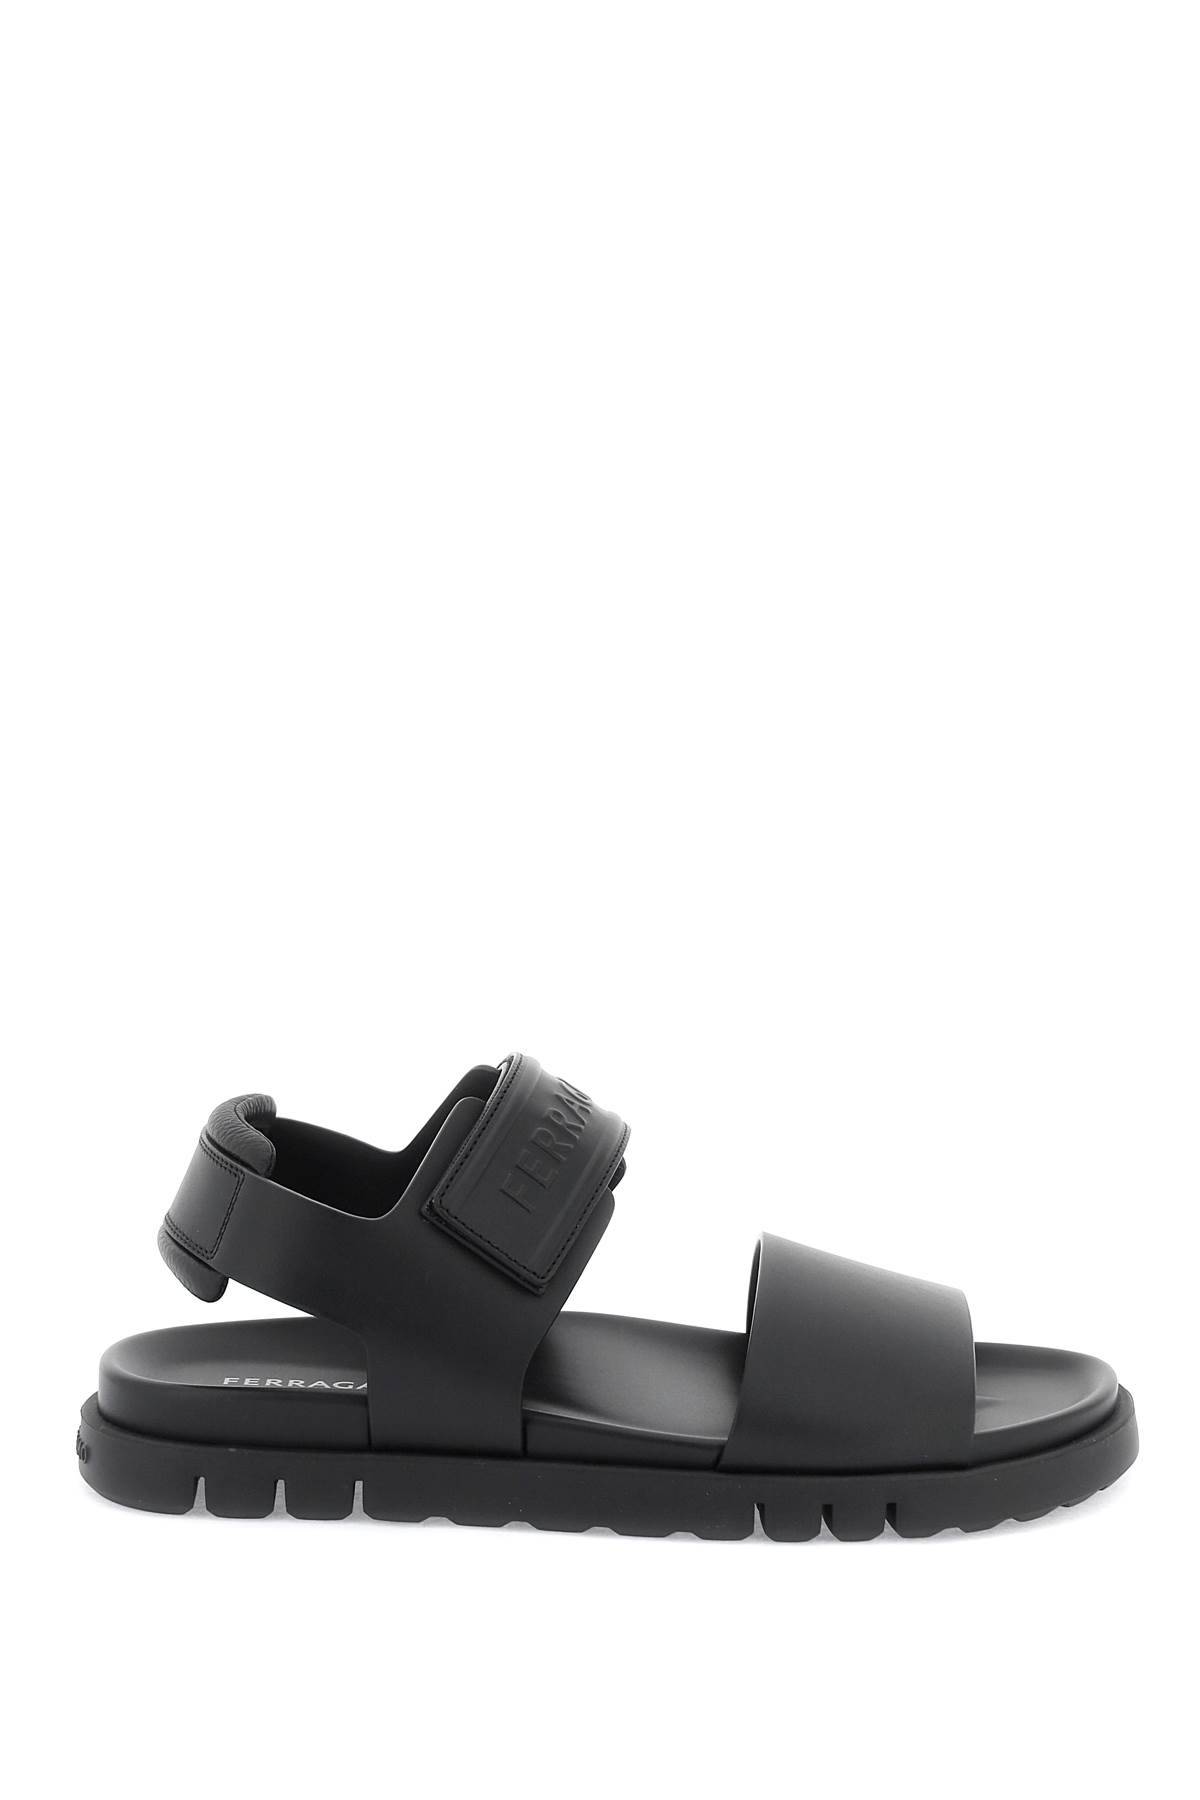 Ferragamo Double Strap Sandals With Stylish Design In Black